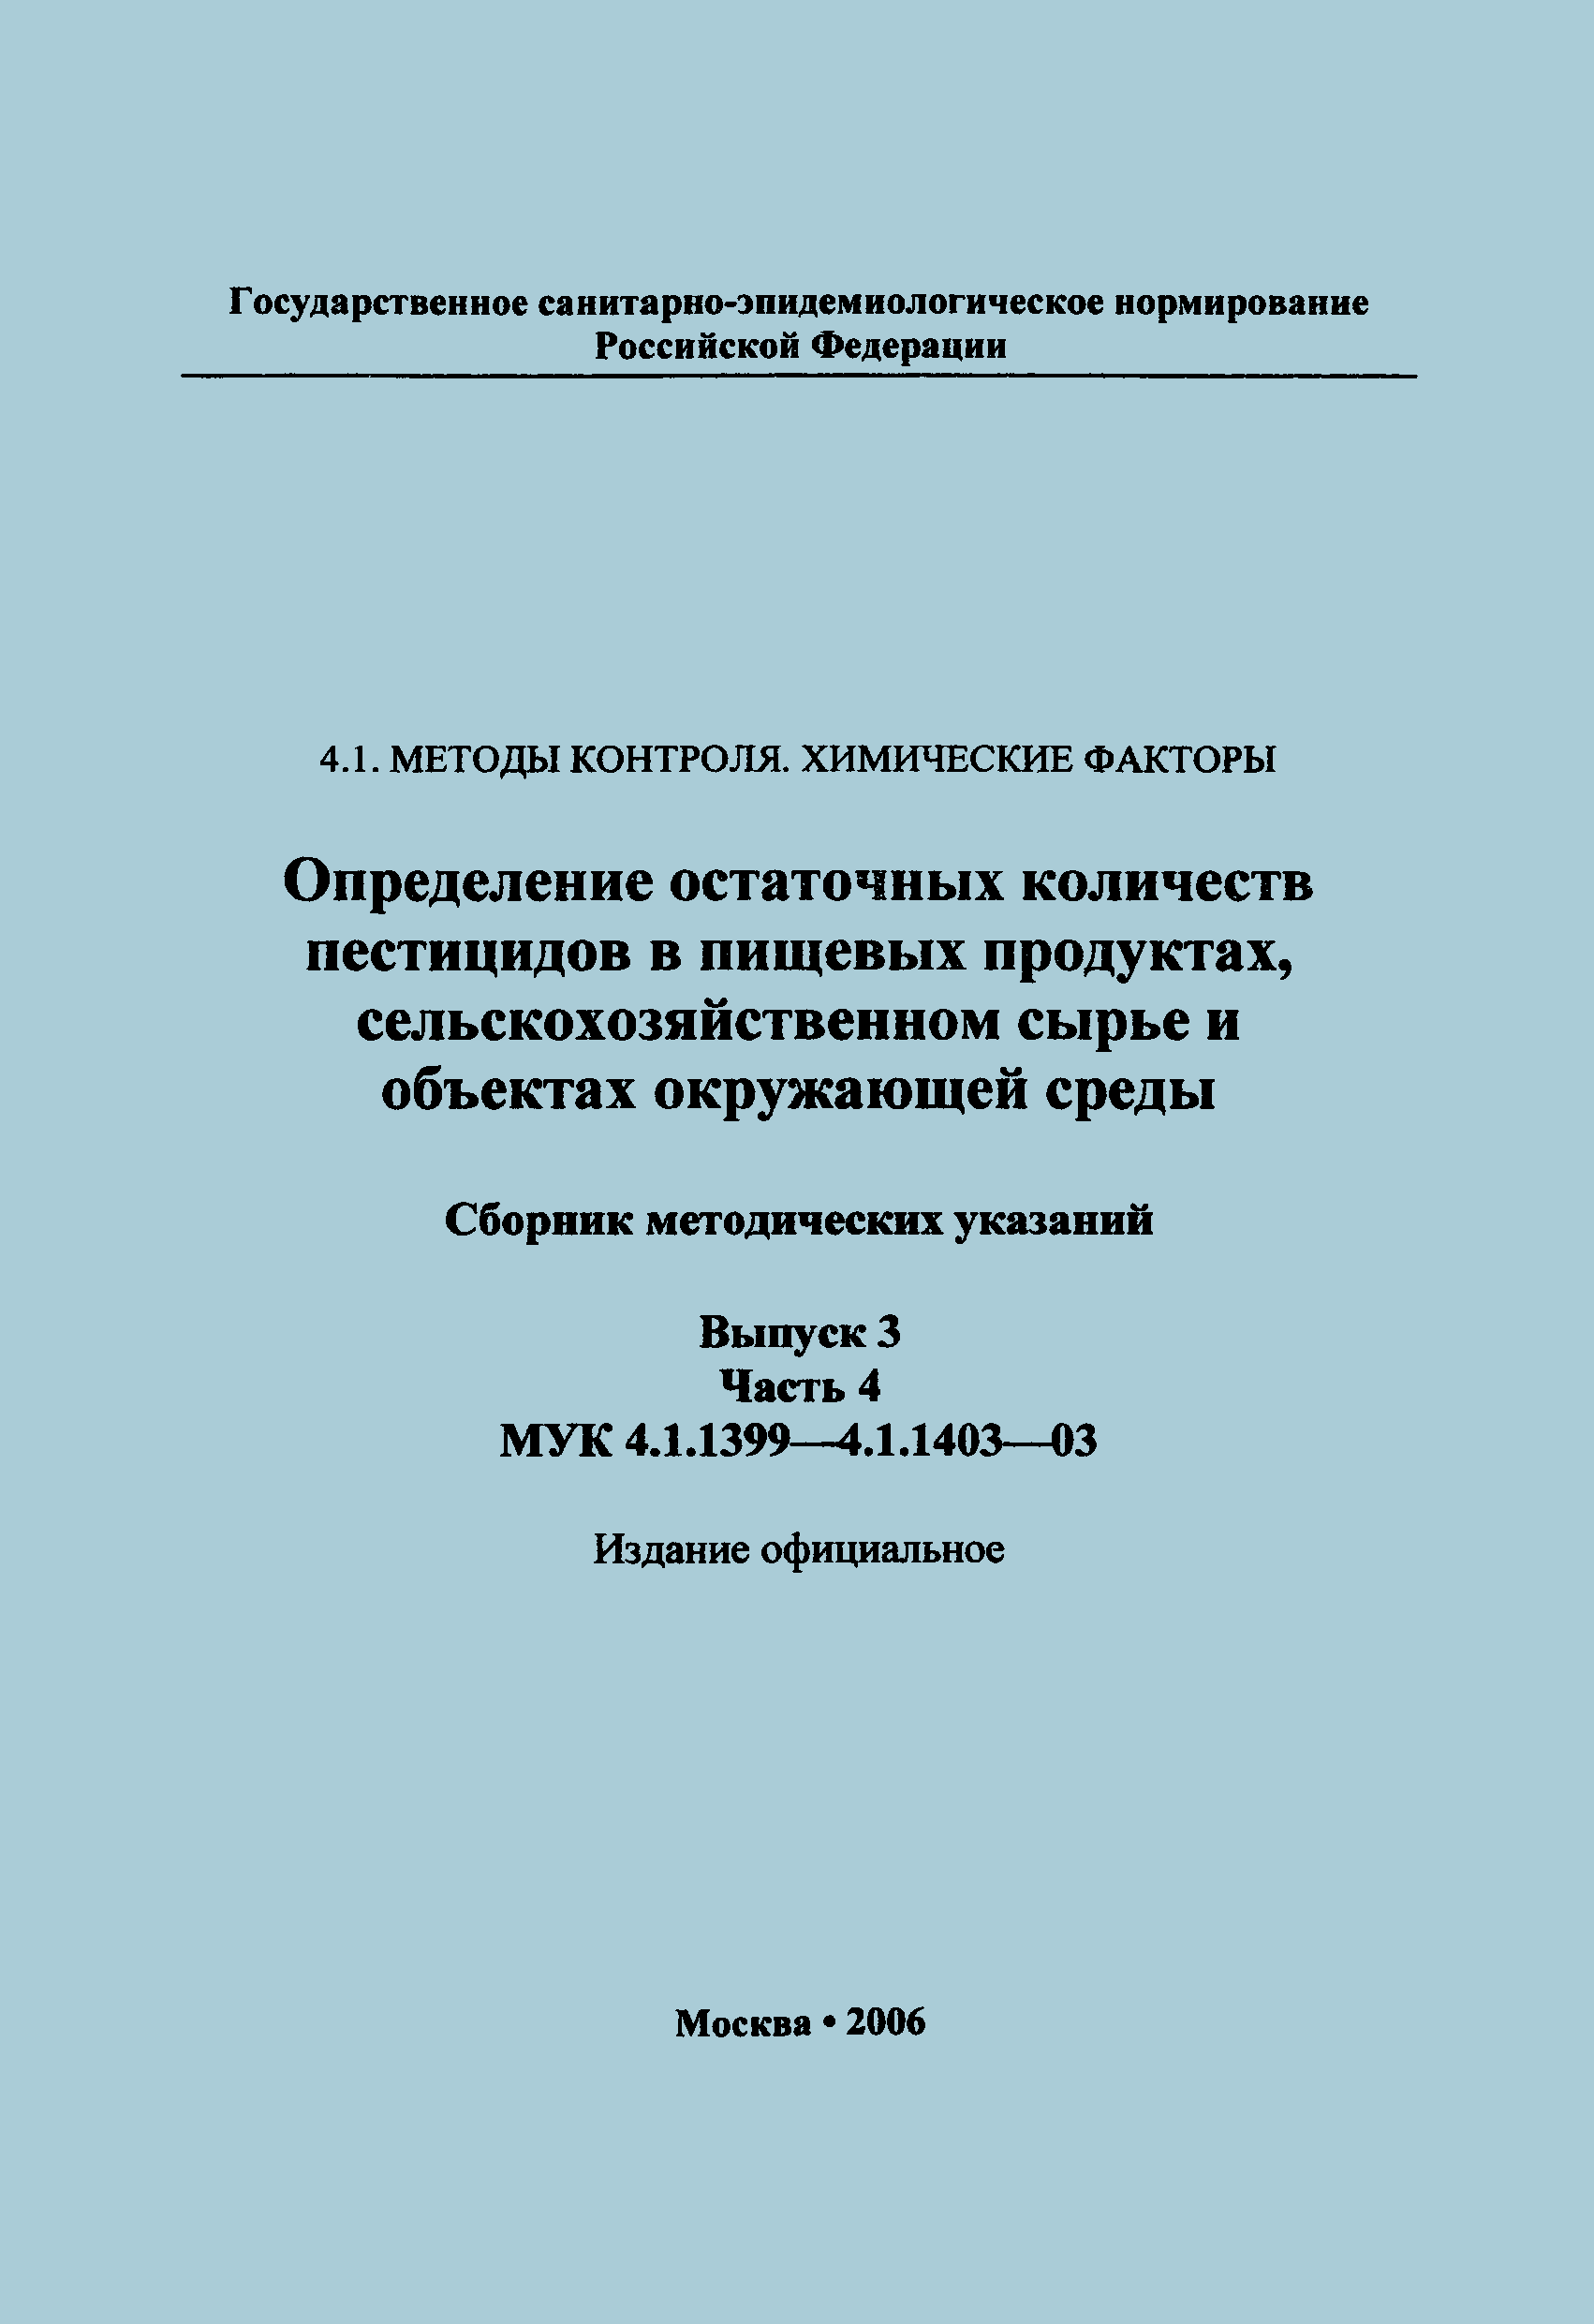 МУК 4.1.1400-03